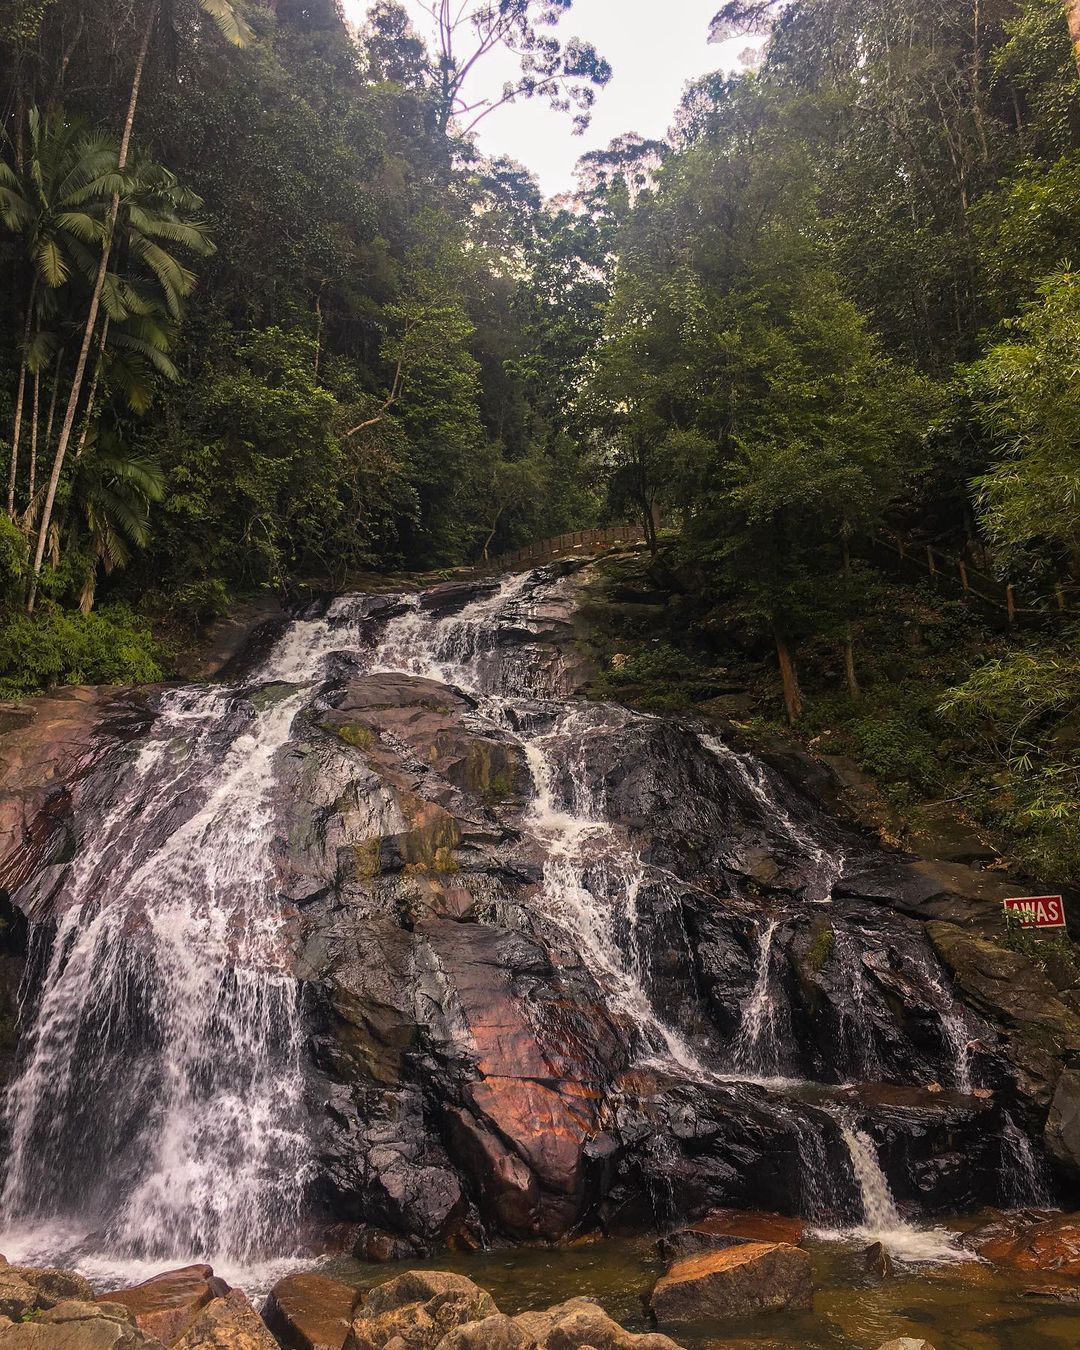 road trip destinations jb - Kota Tinggi Waterfalls